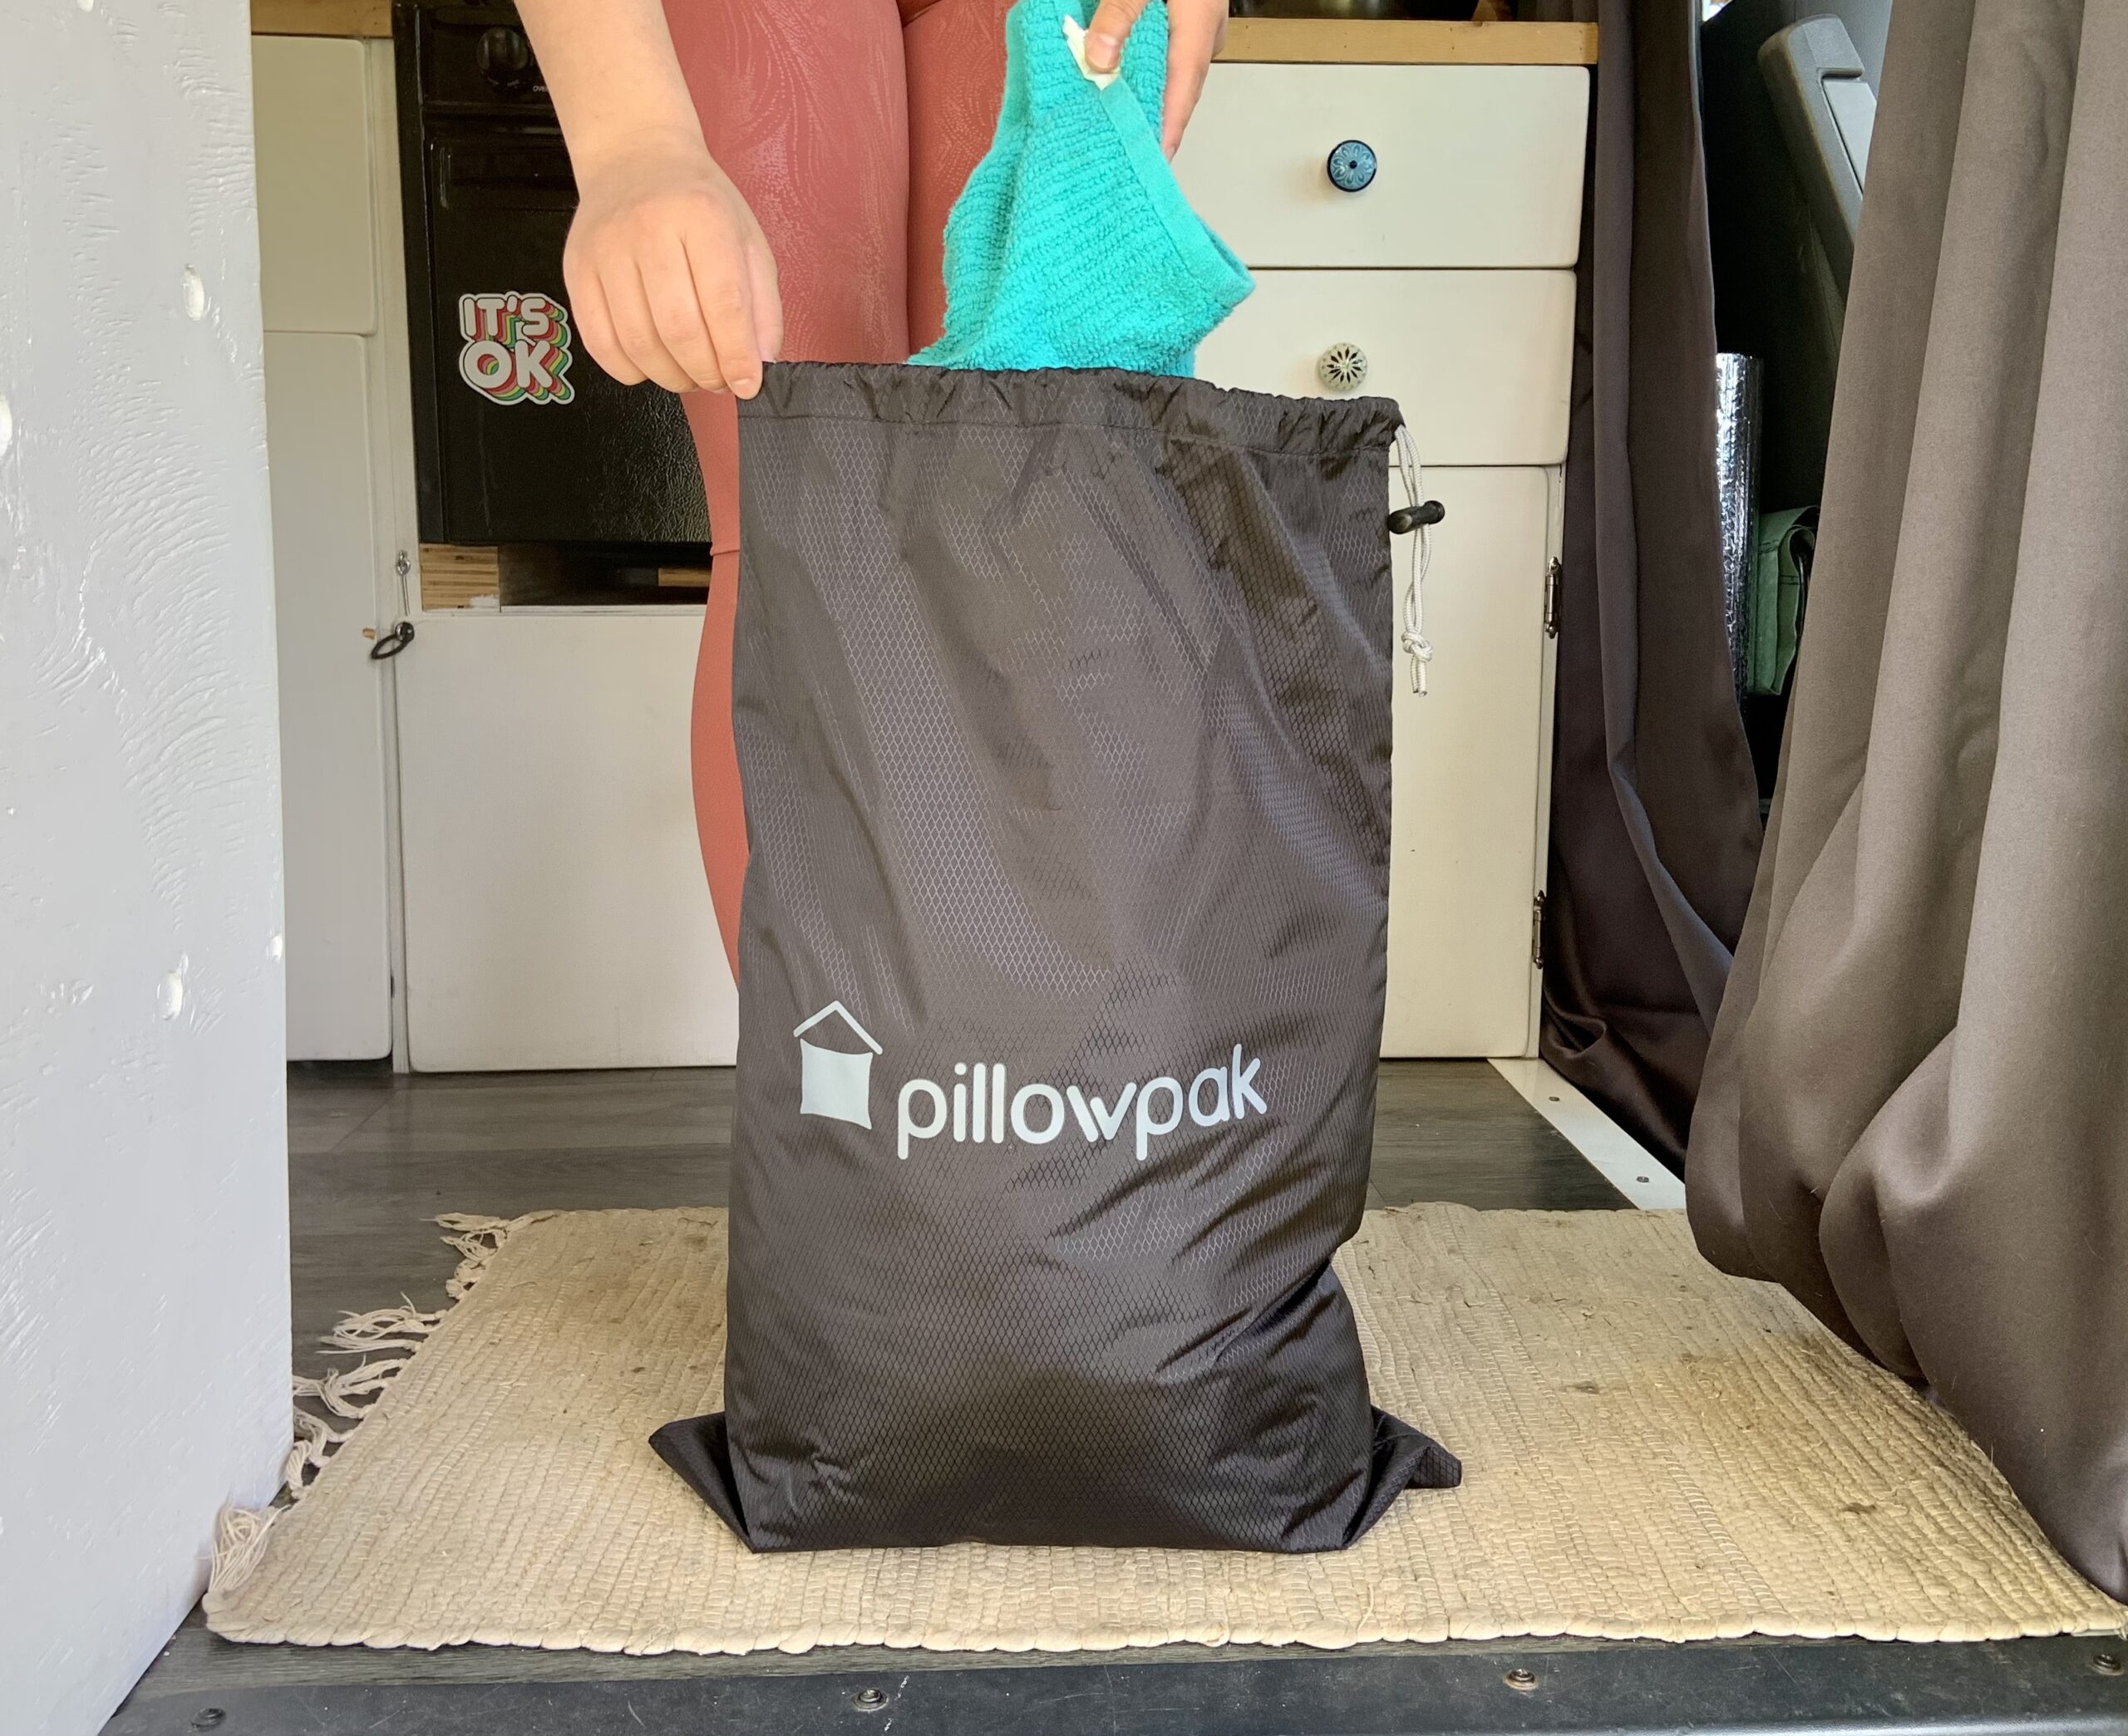 Pillowpak Utility Bag